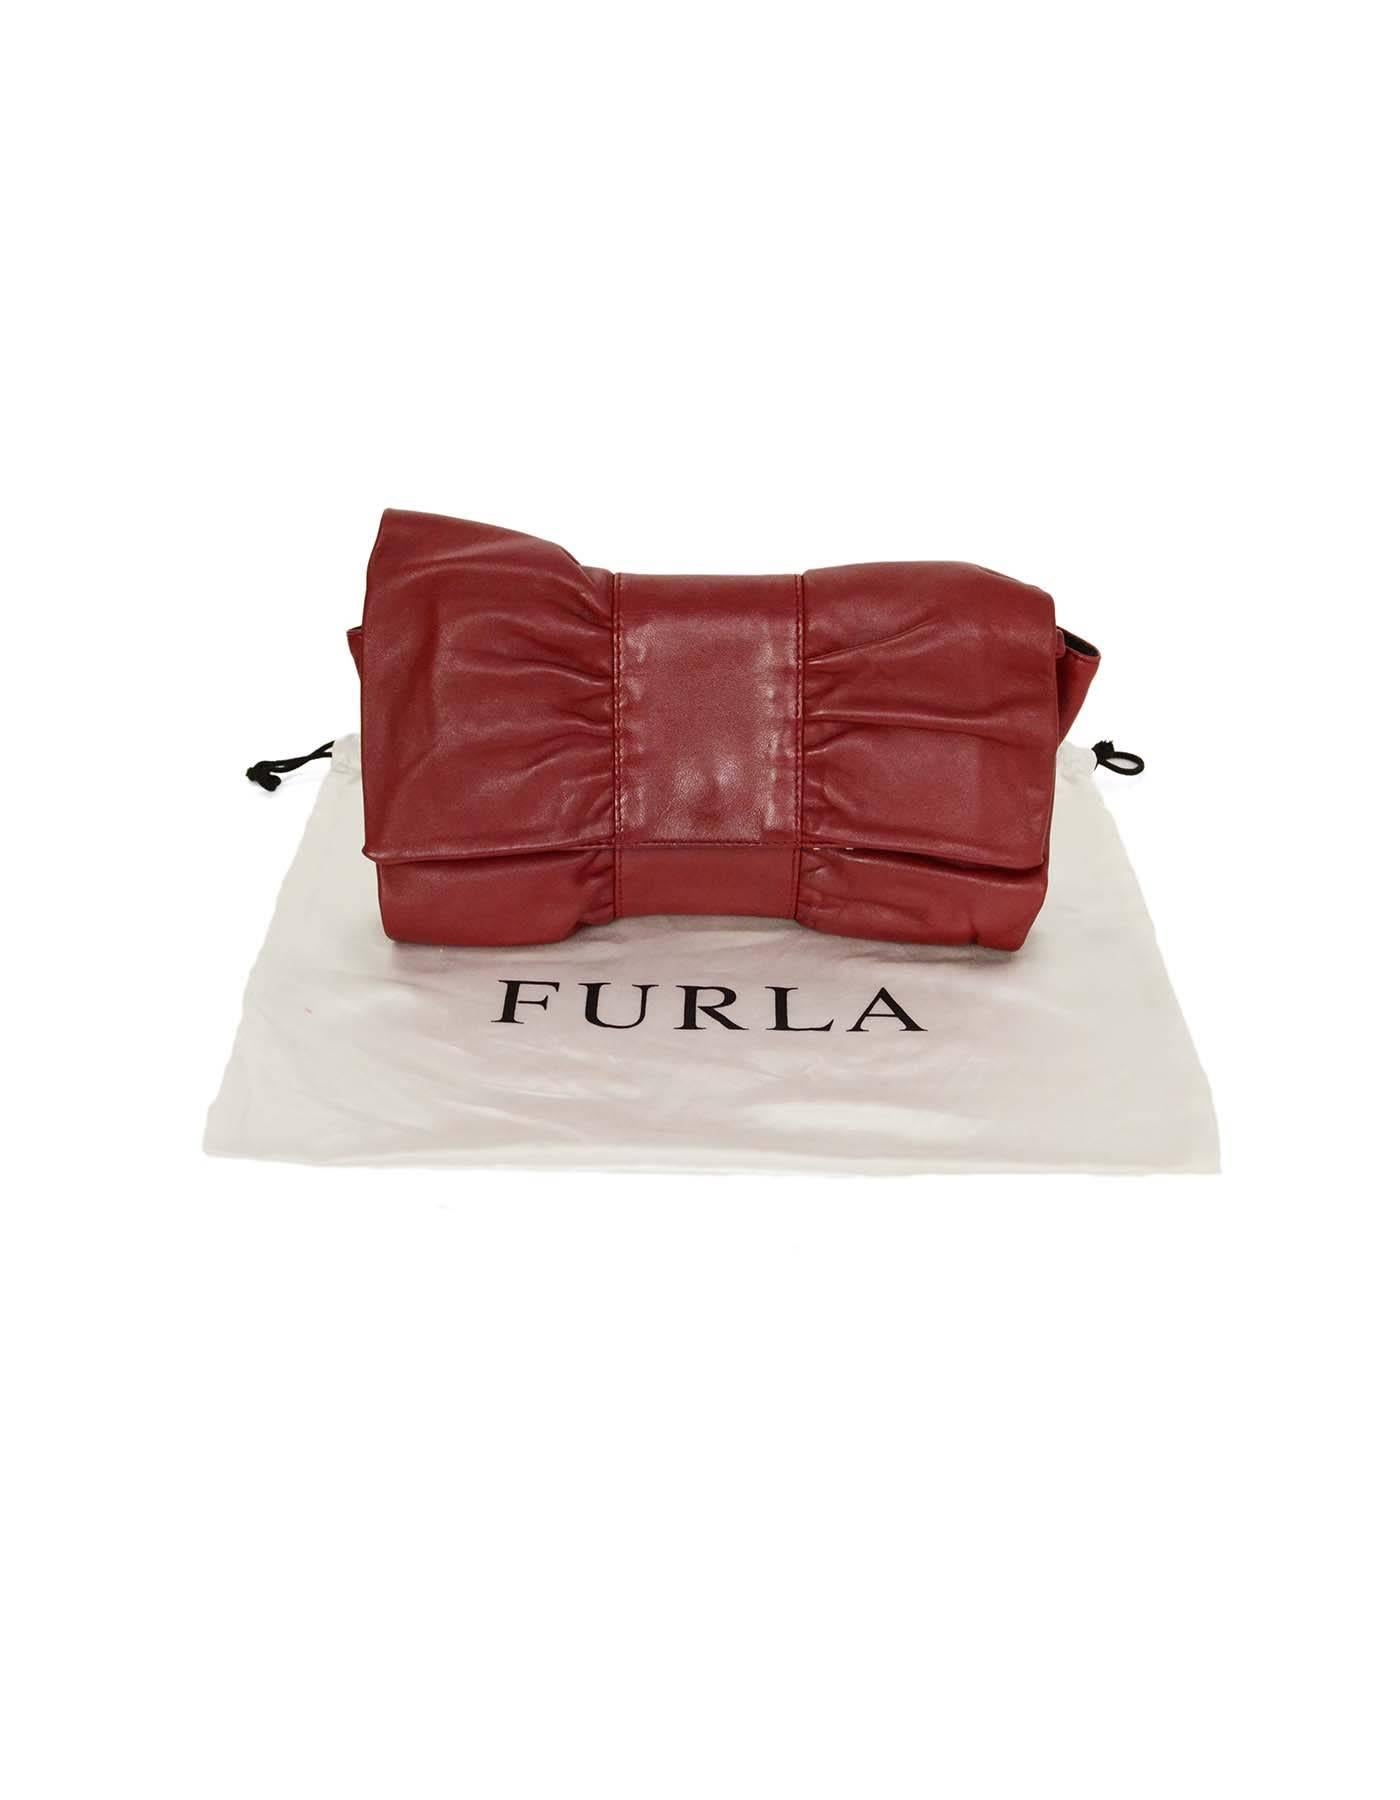 Furla Burgundy Leather Bow Clutch 3